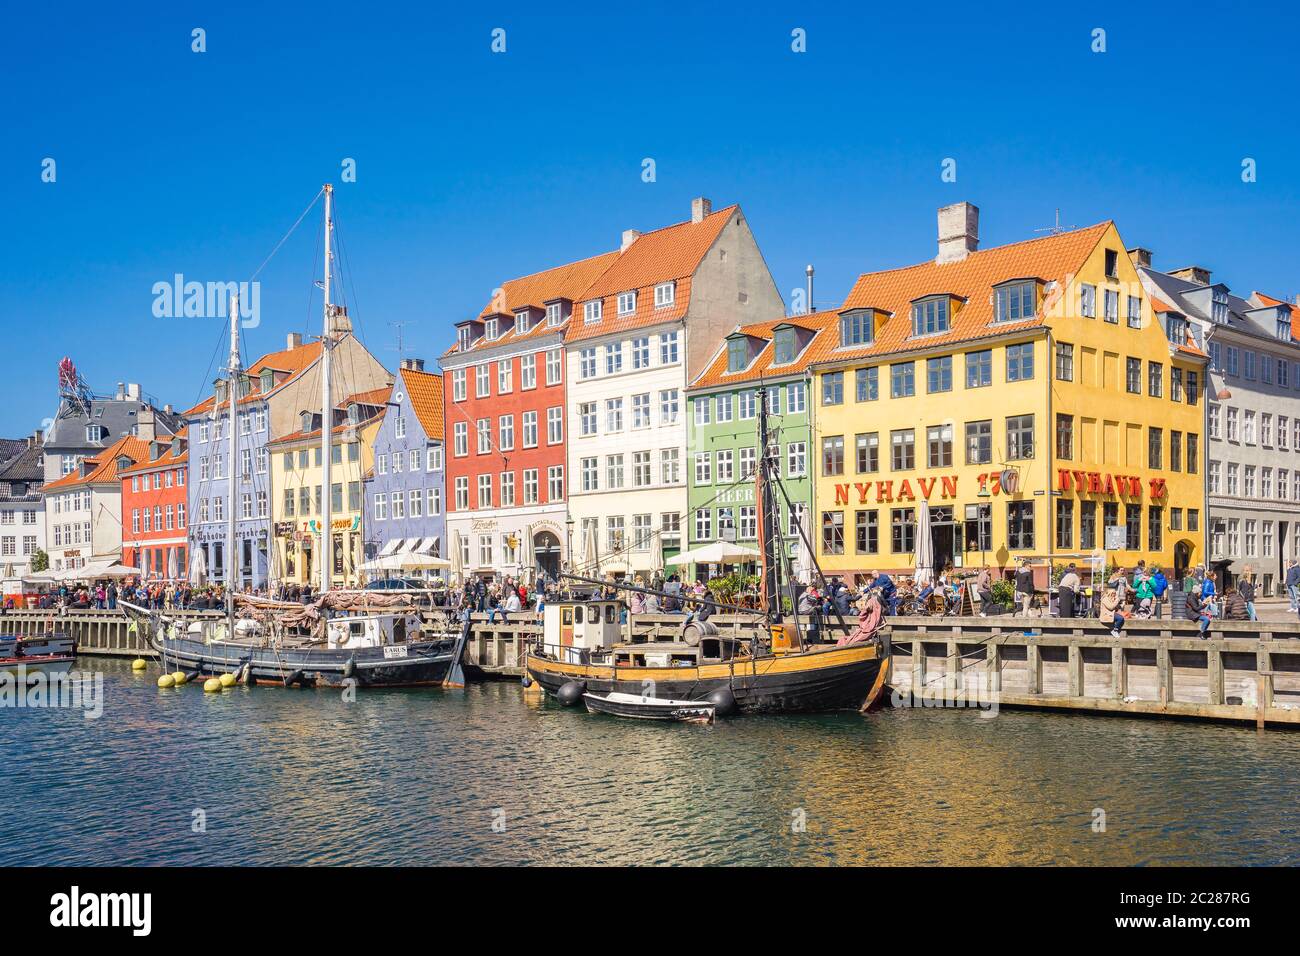 Nyhavn le front de mer, canal et quartier de divertissement à Copenhague, Danemark Banque D'Images